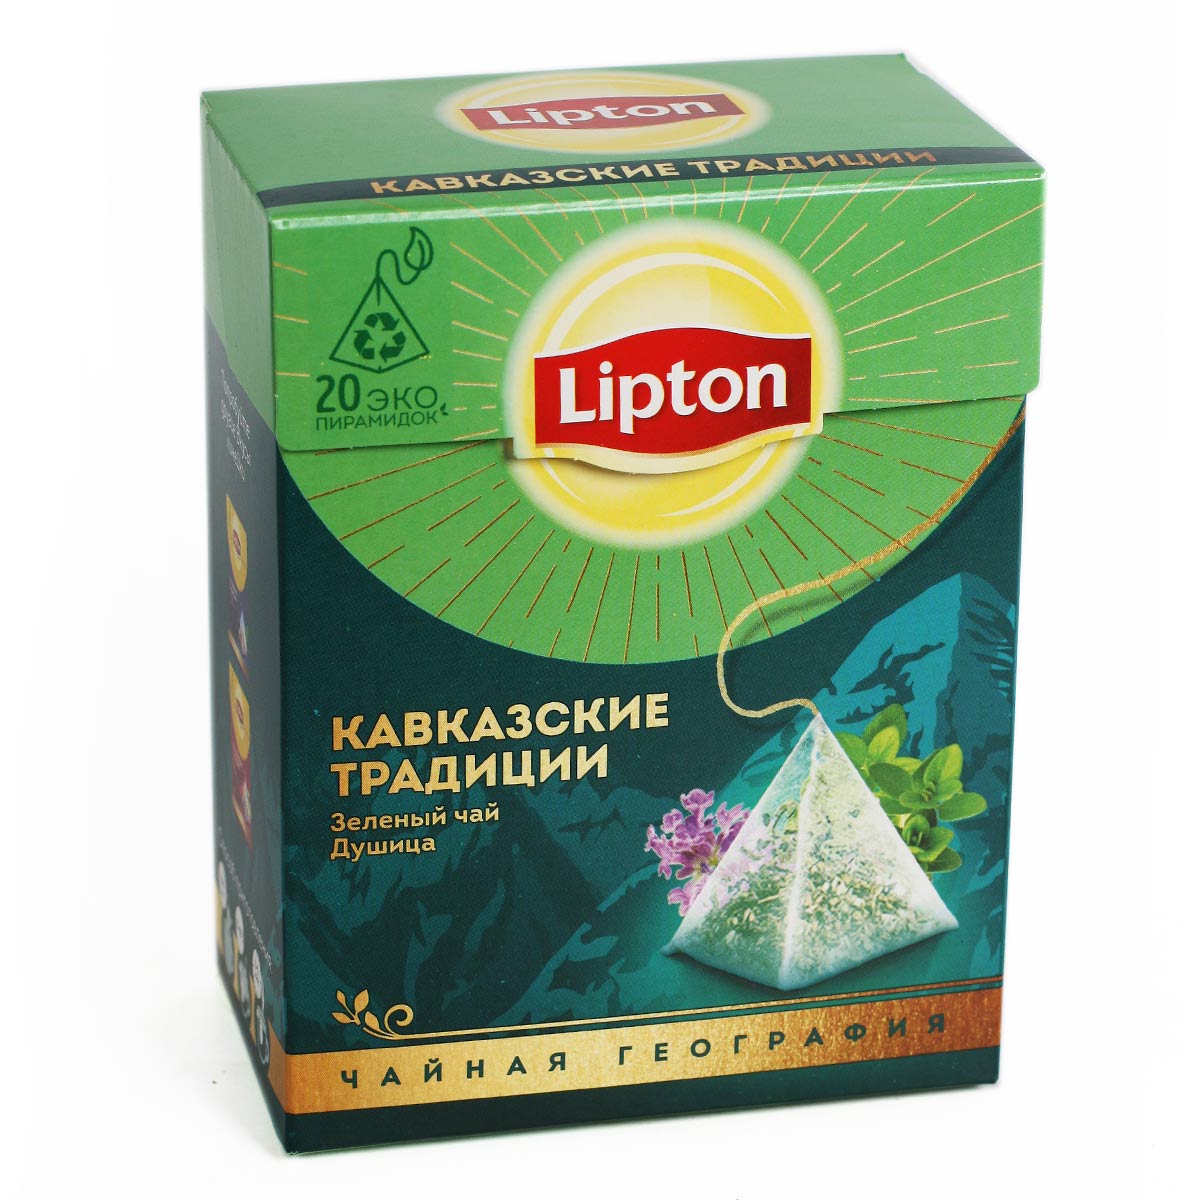 Липтон зеленый чай Lipton КАВКАЗСКИЕ ТРАДИЦИИ Душица 20 пирамидок 32г